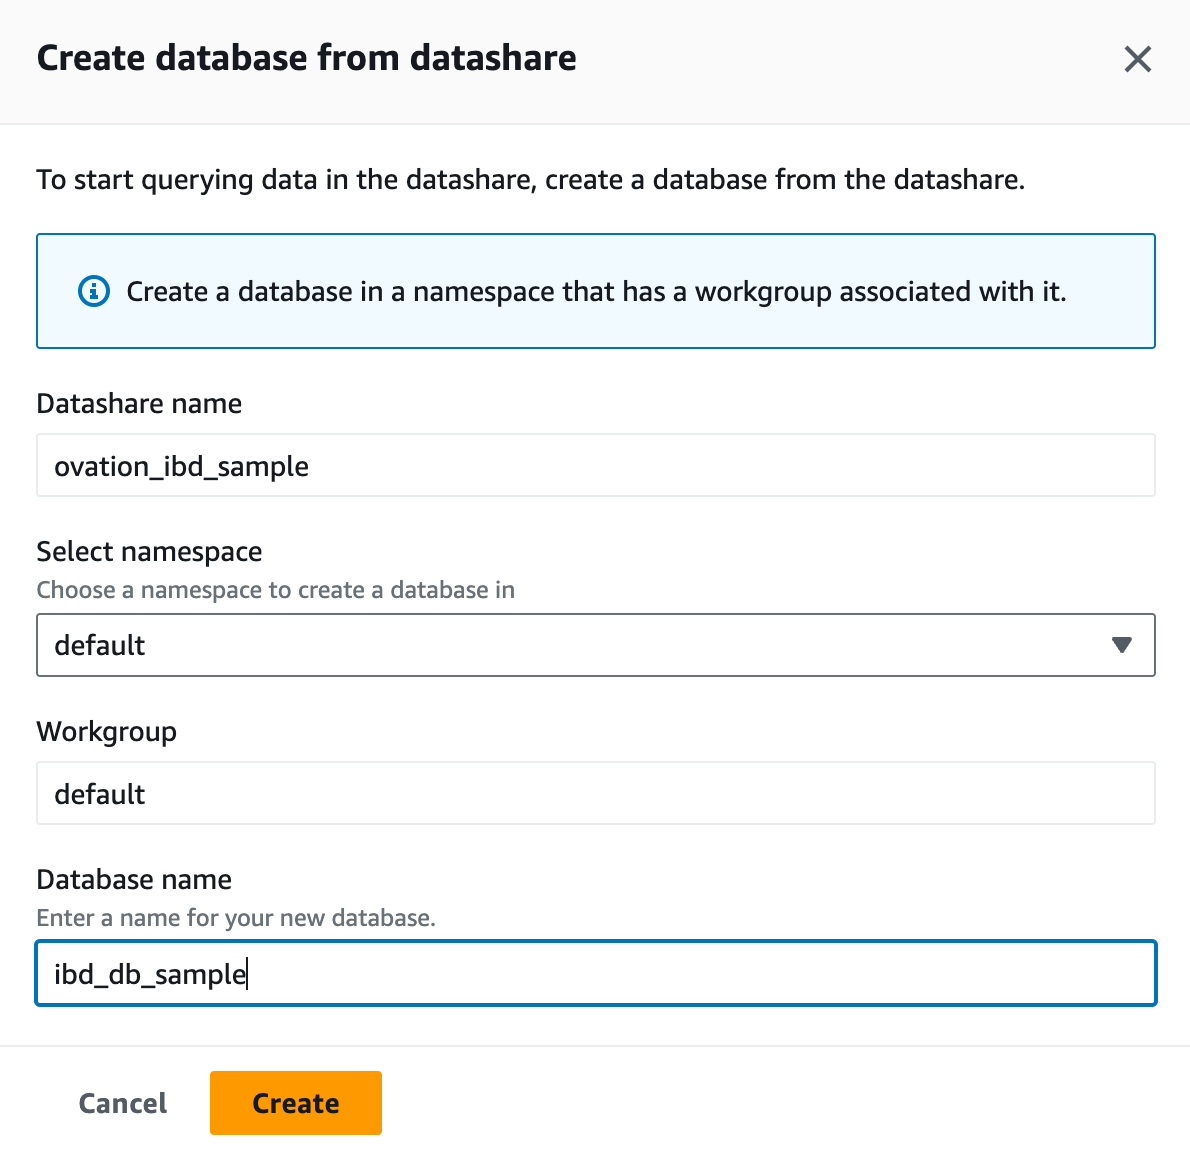 Create database from datashare